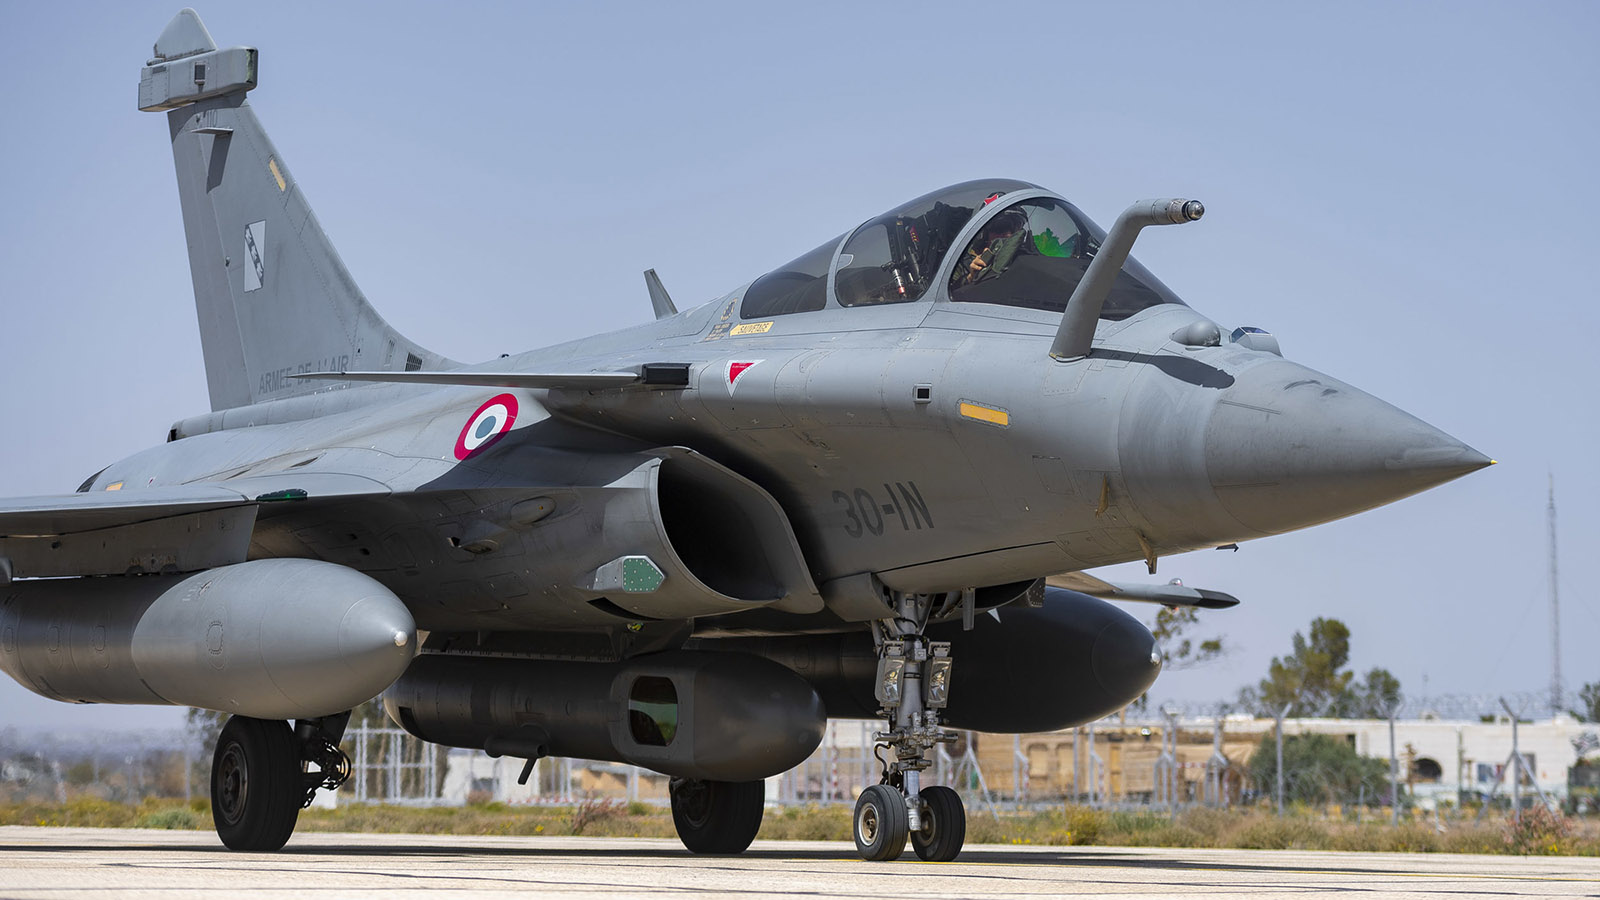 Rafale Ελλάδα: Ένα σημαντικό πλεονέκτημα στην Ελληνική Πολεμική Αεροπορία, γράφει το Forbes